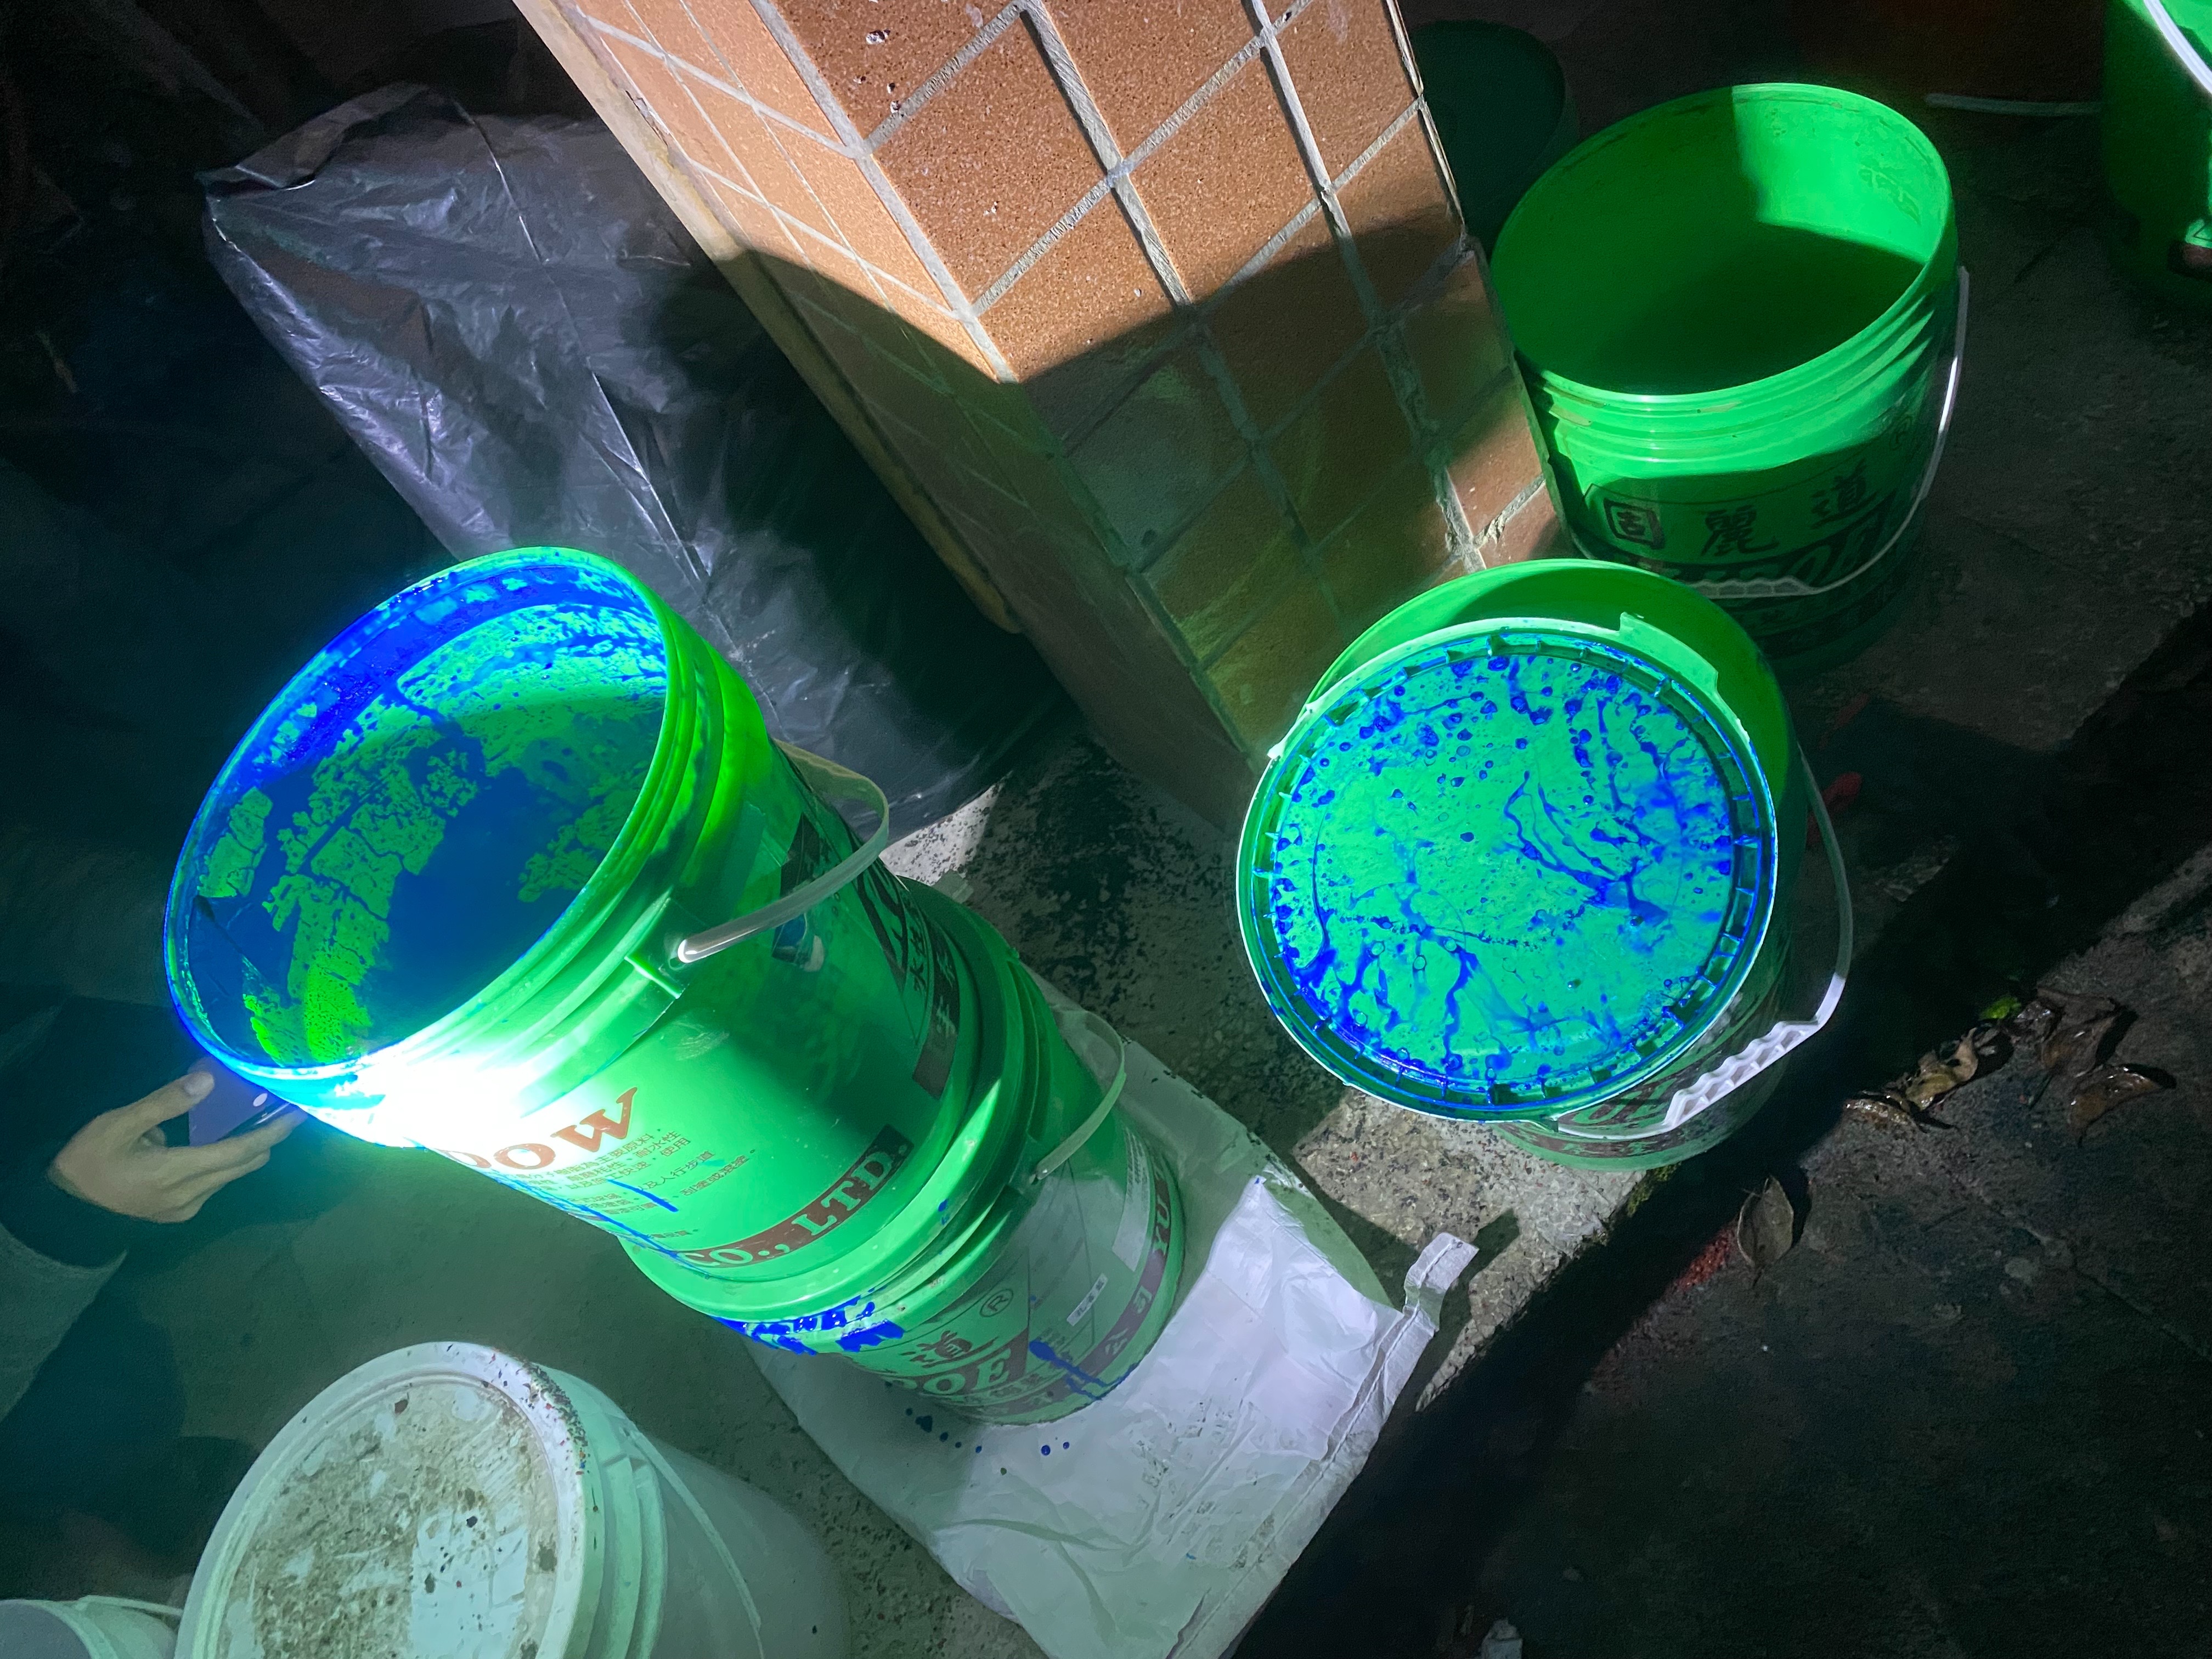 2.稽查人員查獲藍色廢油漆桶。